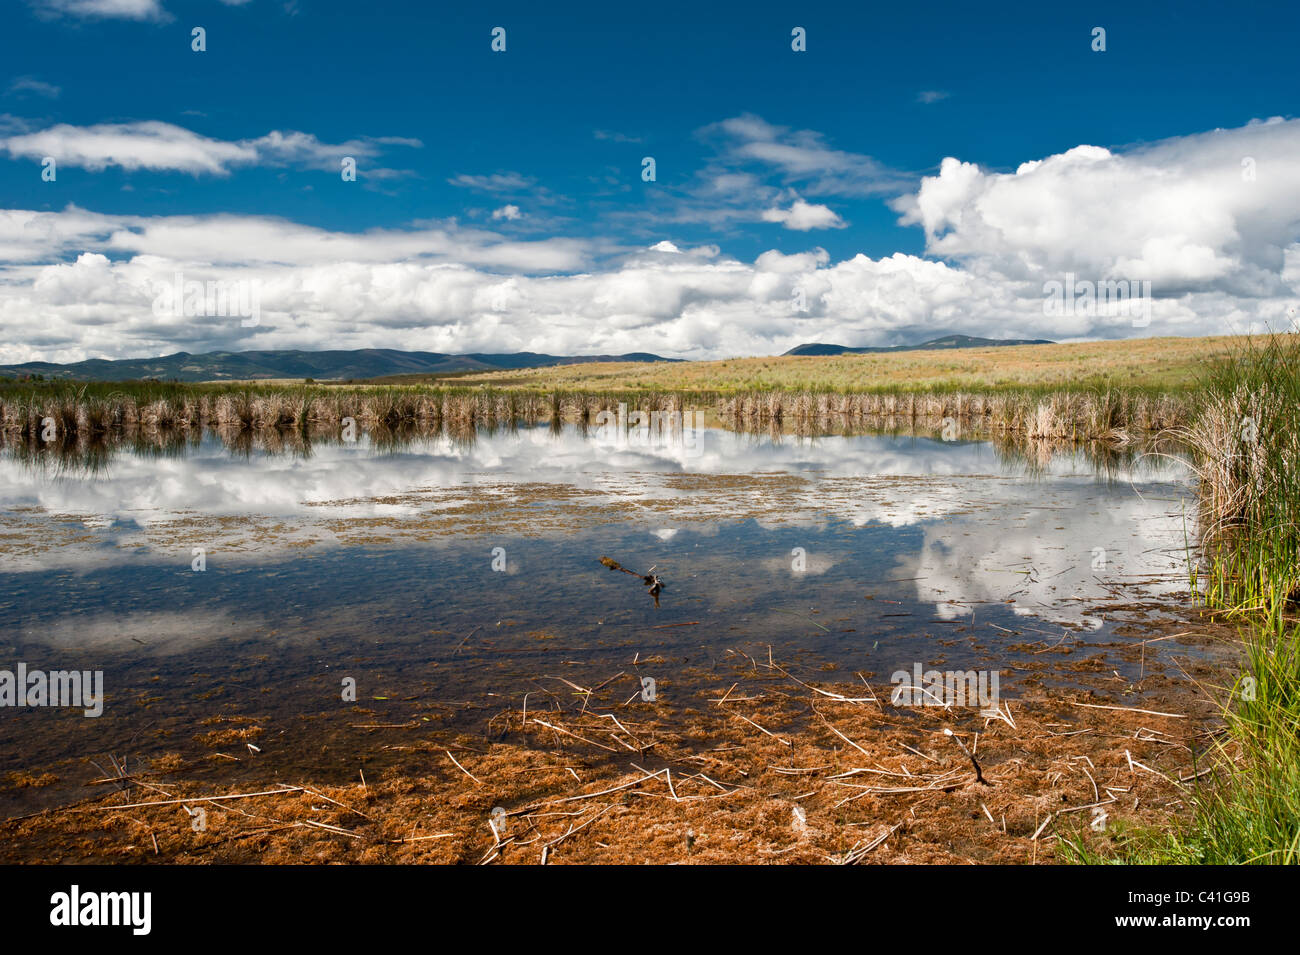 Ces petits étangs dans la vallée de l'ouest du Montana Blackfoot fournit des habitats de terres humides pour la sauvagine et les autres espèces sauvages. Banque D'Images